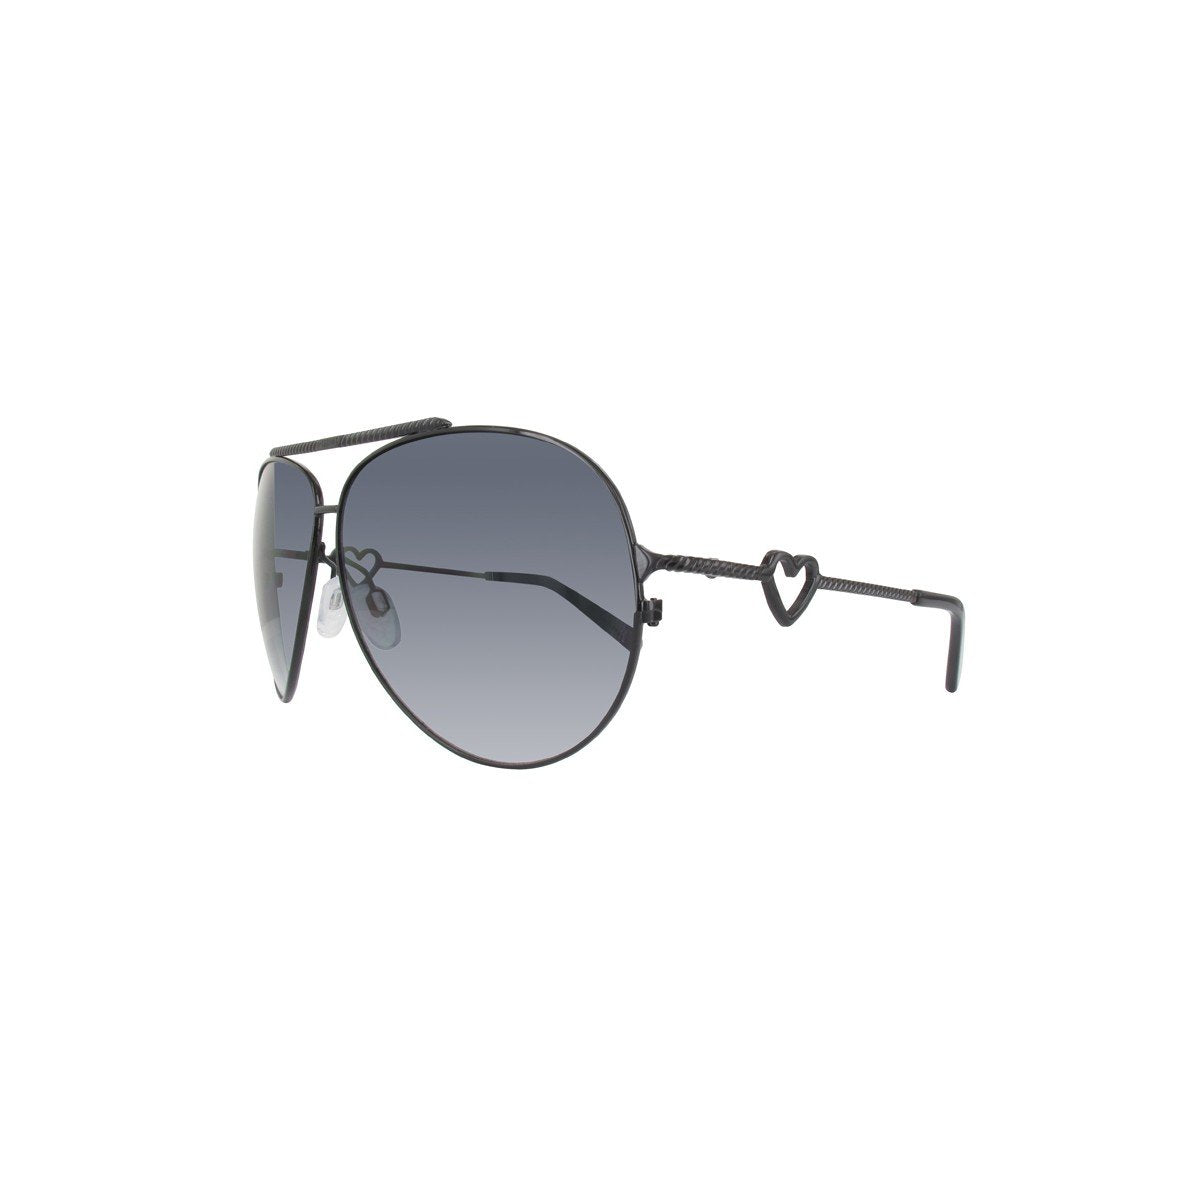 moschino aviator sunglasses